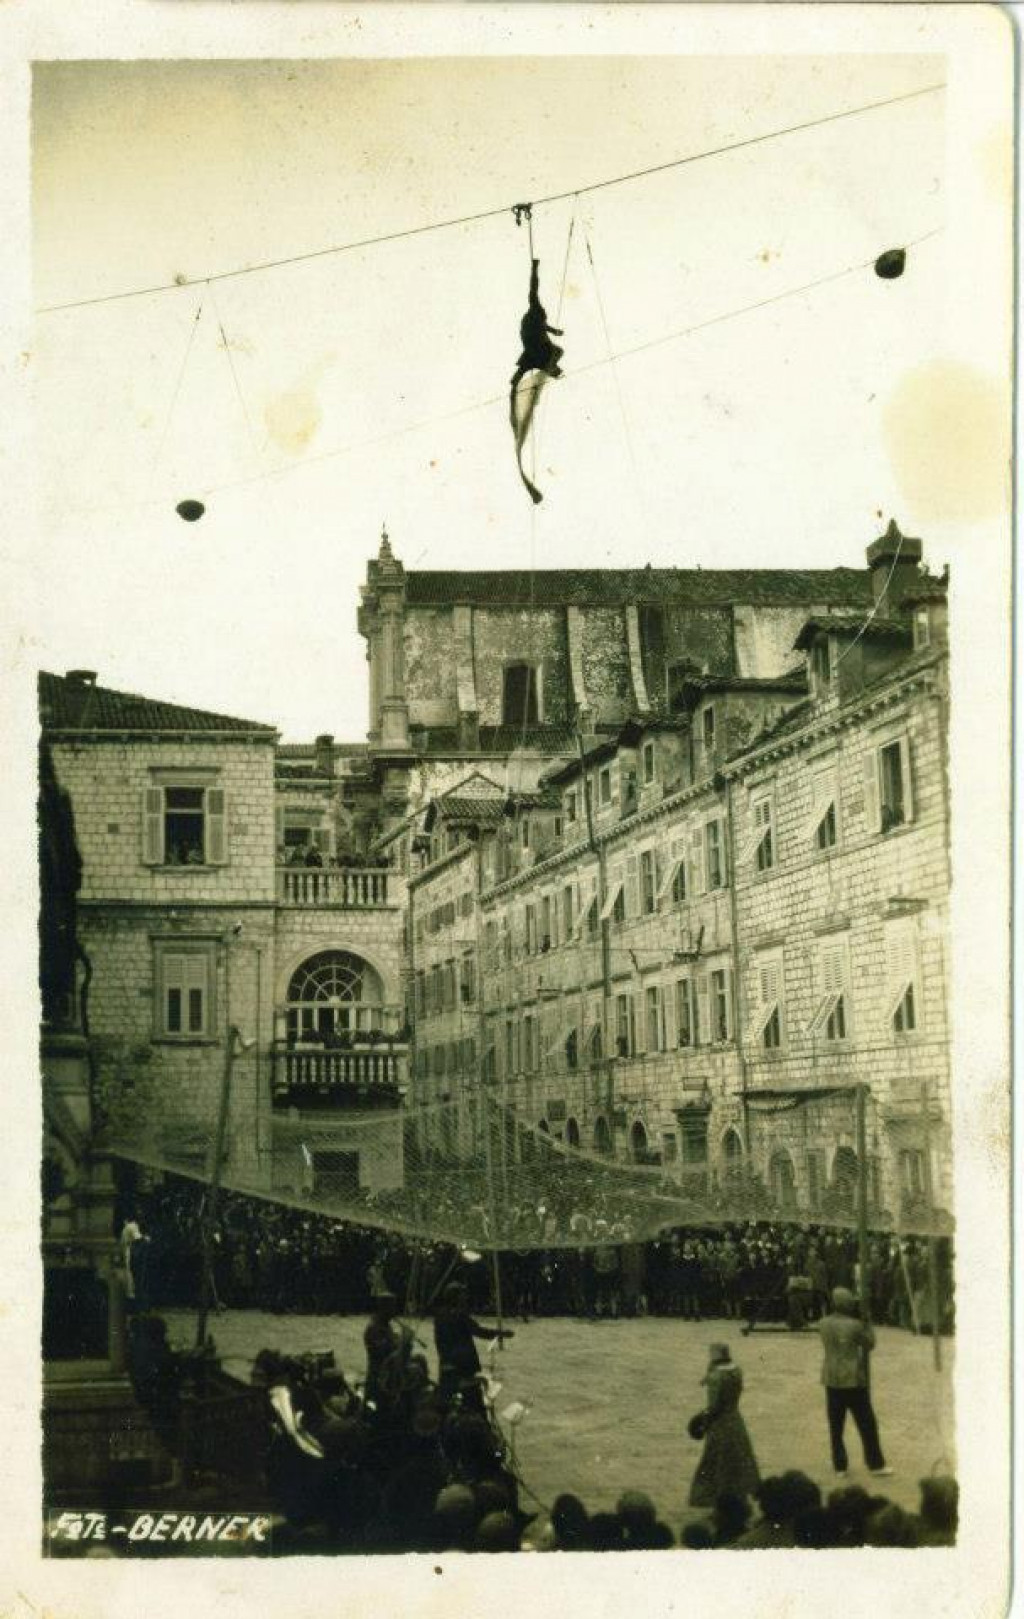 &lt;p&gt;vratolomije akrobata 1930. godine iznad Gundulićeve poljane&lt;/p&gt;